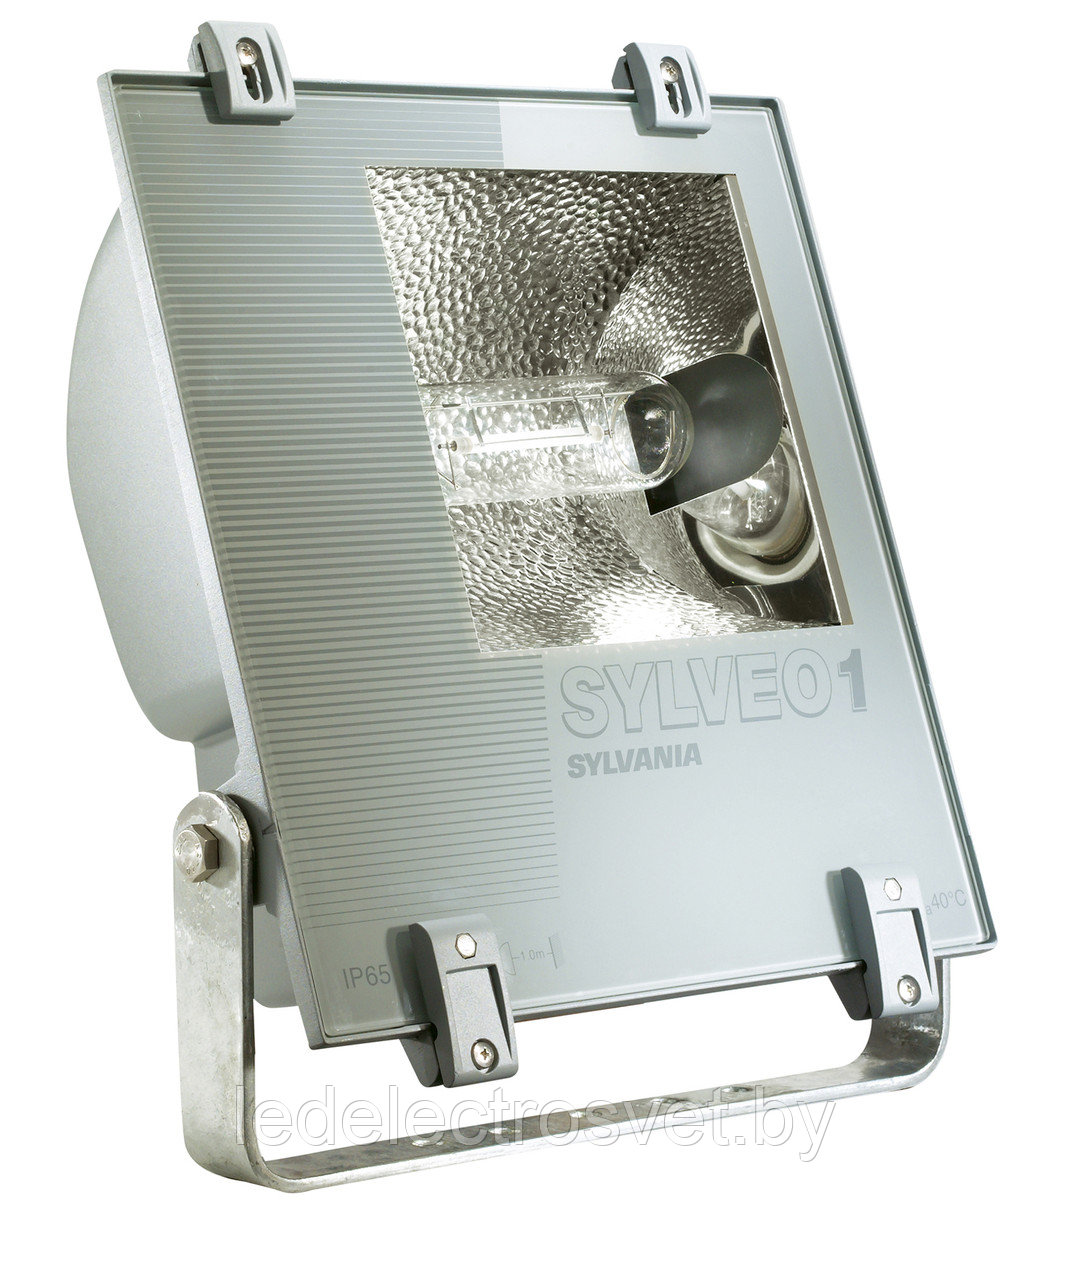 Светильник Sylveo с асимметричным отражателем для металлогалогенных ламп HSI-TD 70W Rx7s. SYLVANIA